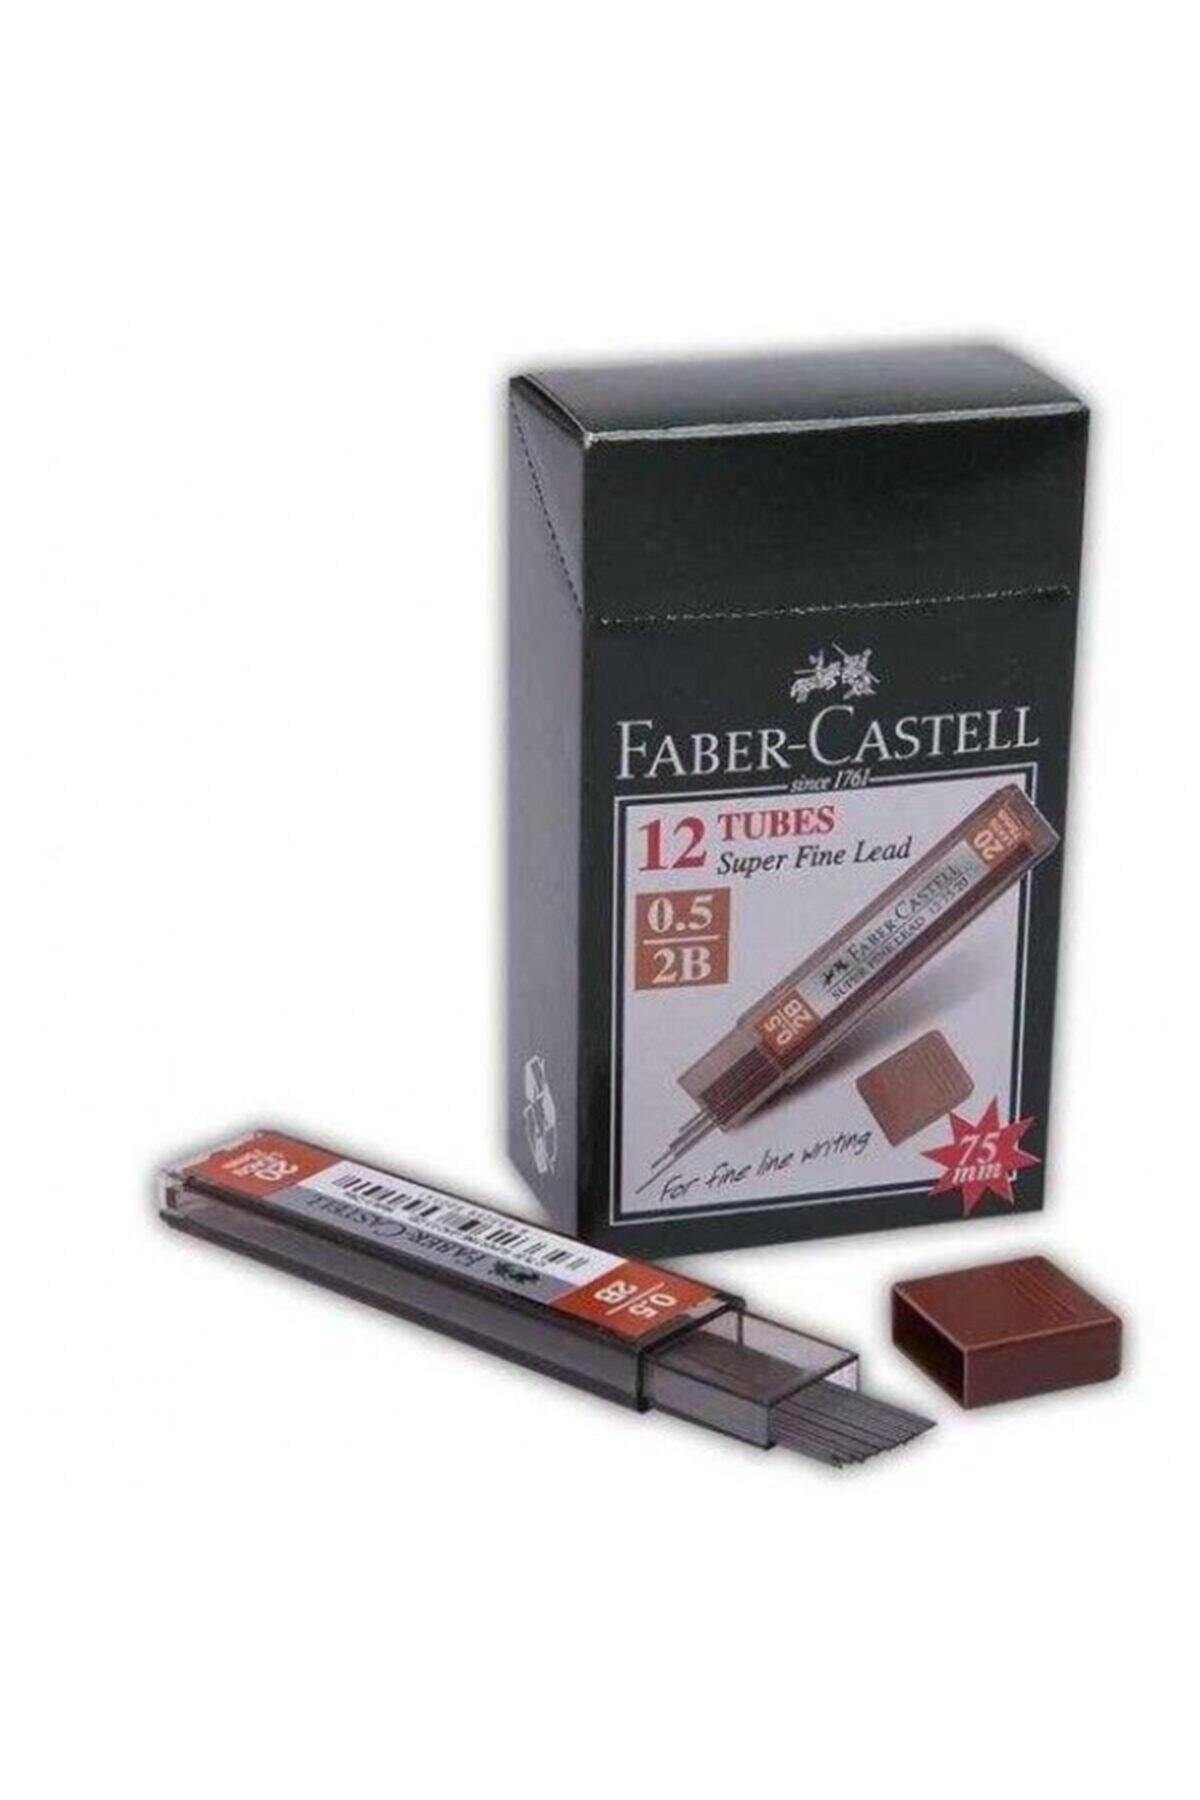 Faber Castell 12 Li Paket Min Kalem Ucu Super Fıne 0.5 Uc 2b 75mm 20 Li Tüp